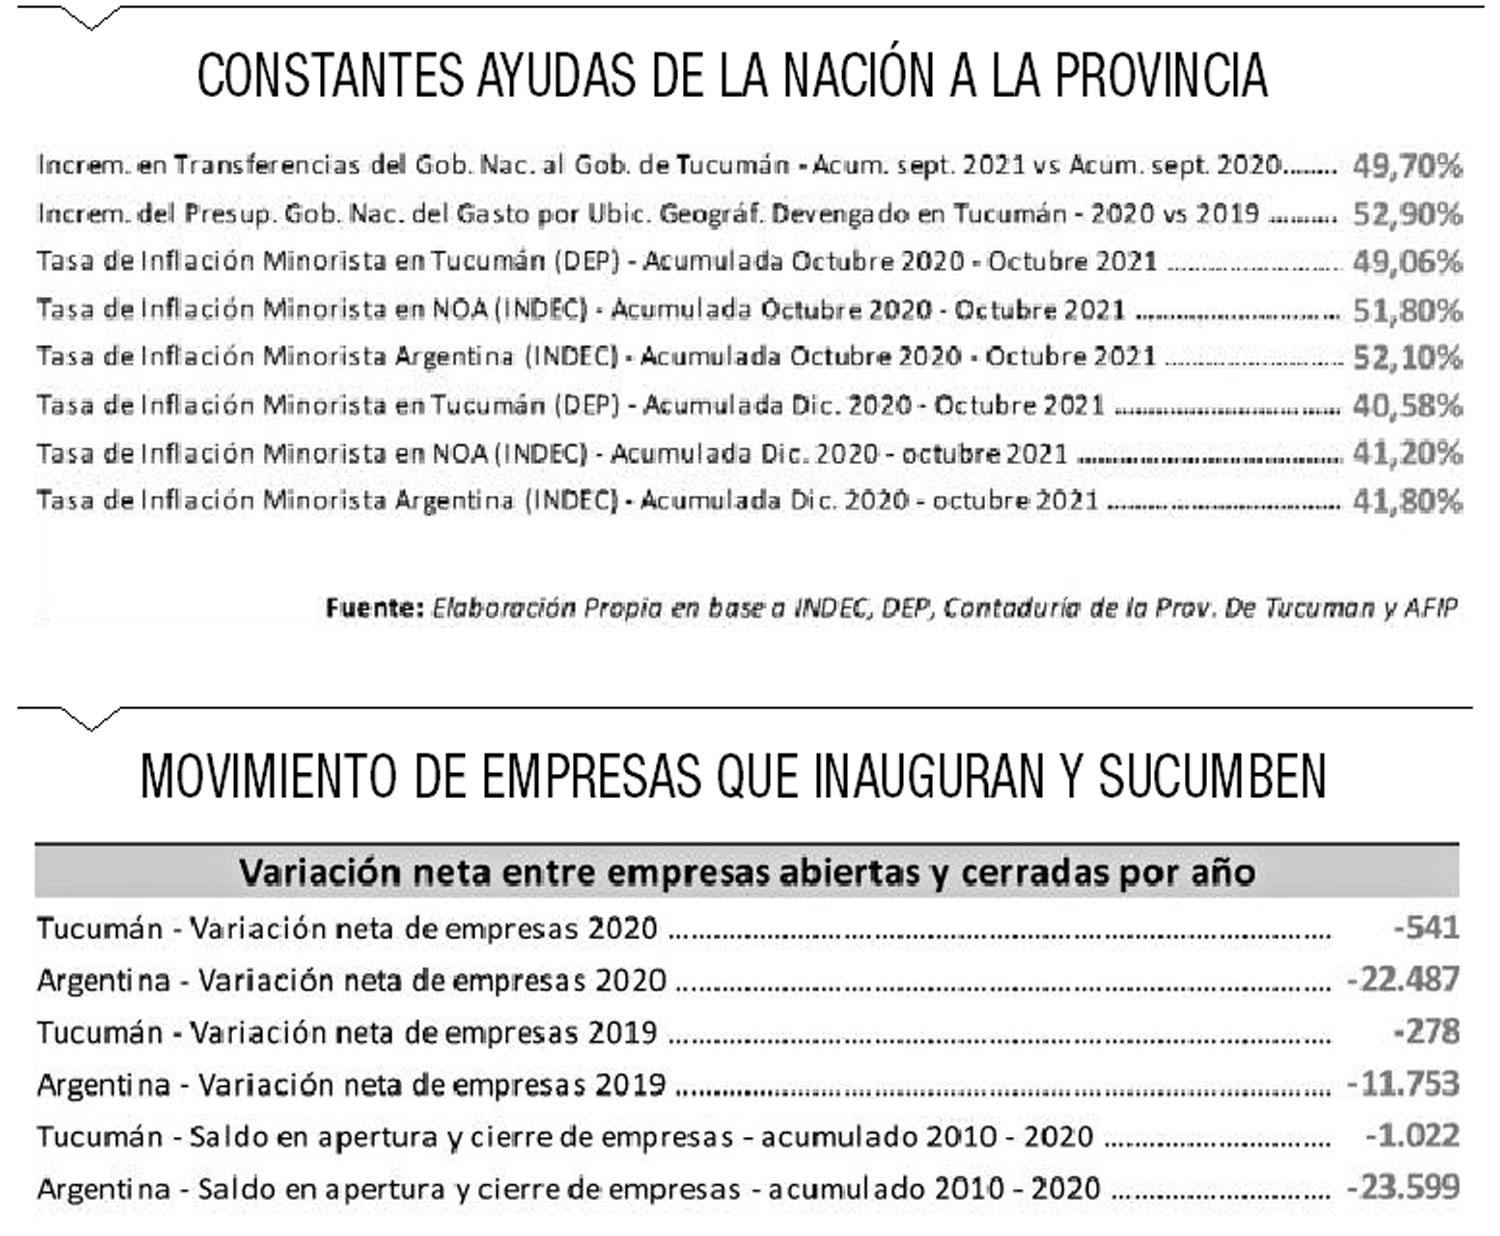 Tucumán es una de las provincias más estancadas en términos económicos